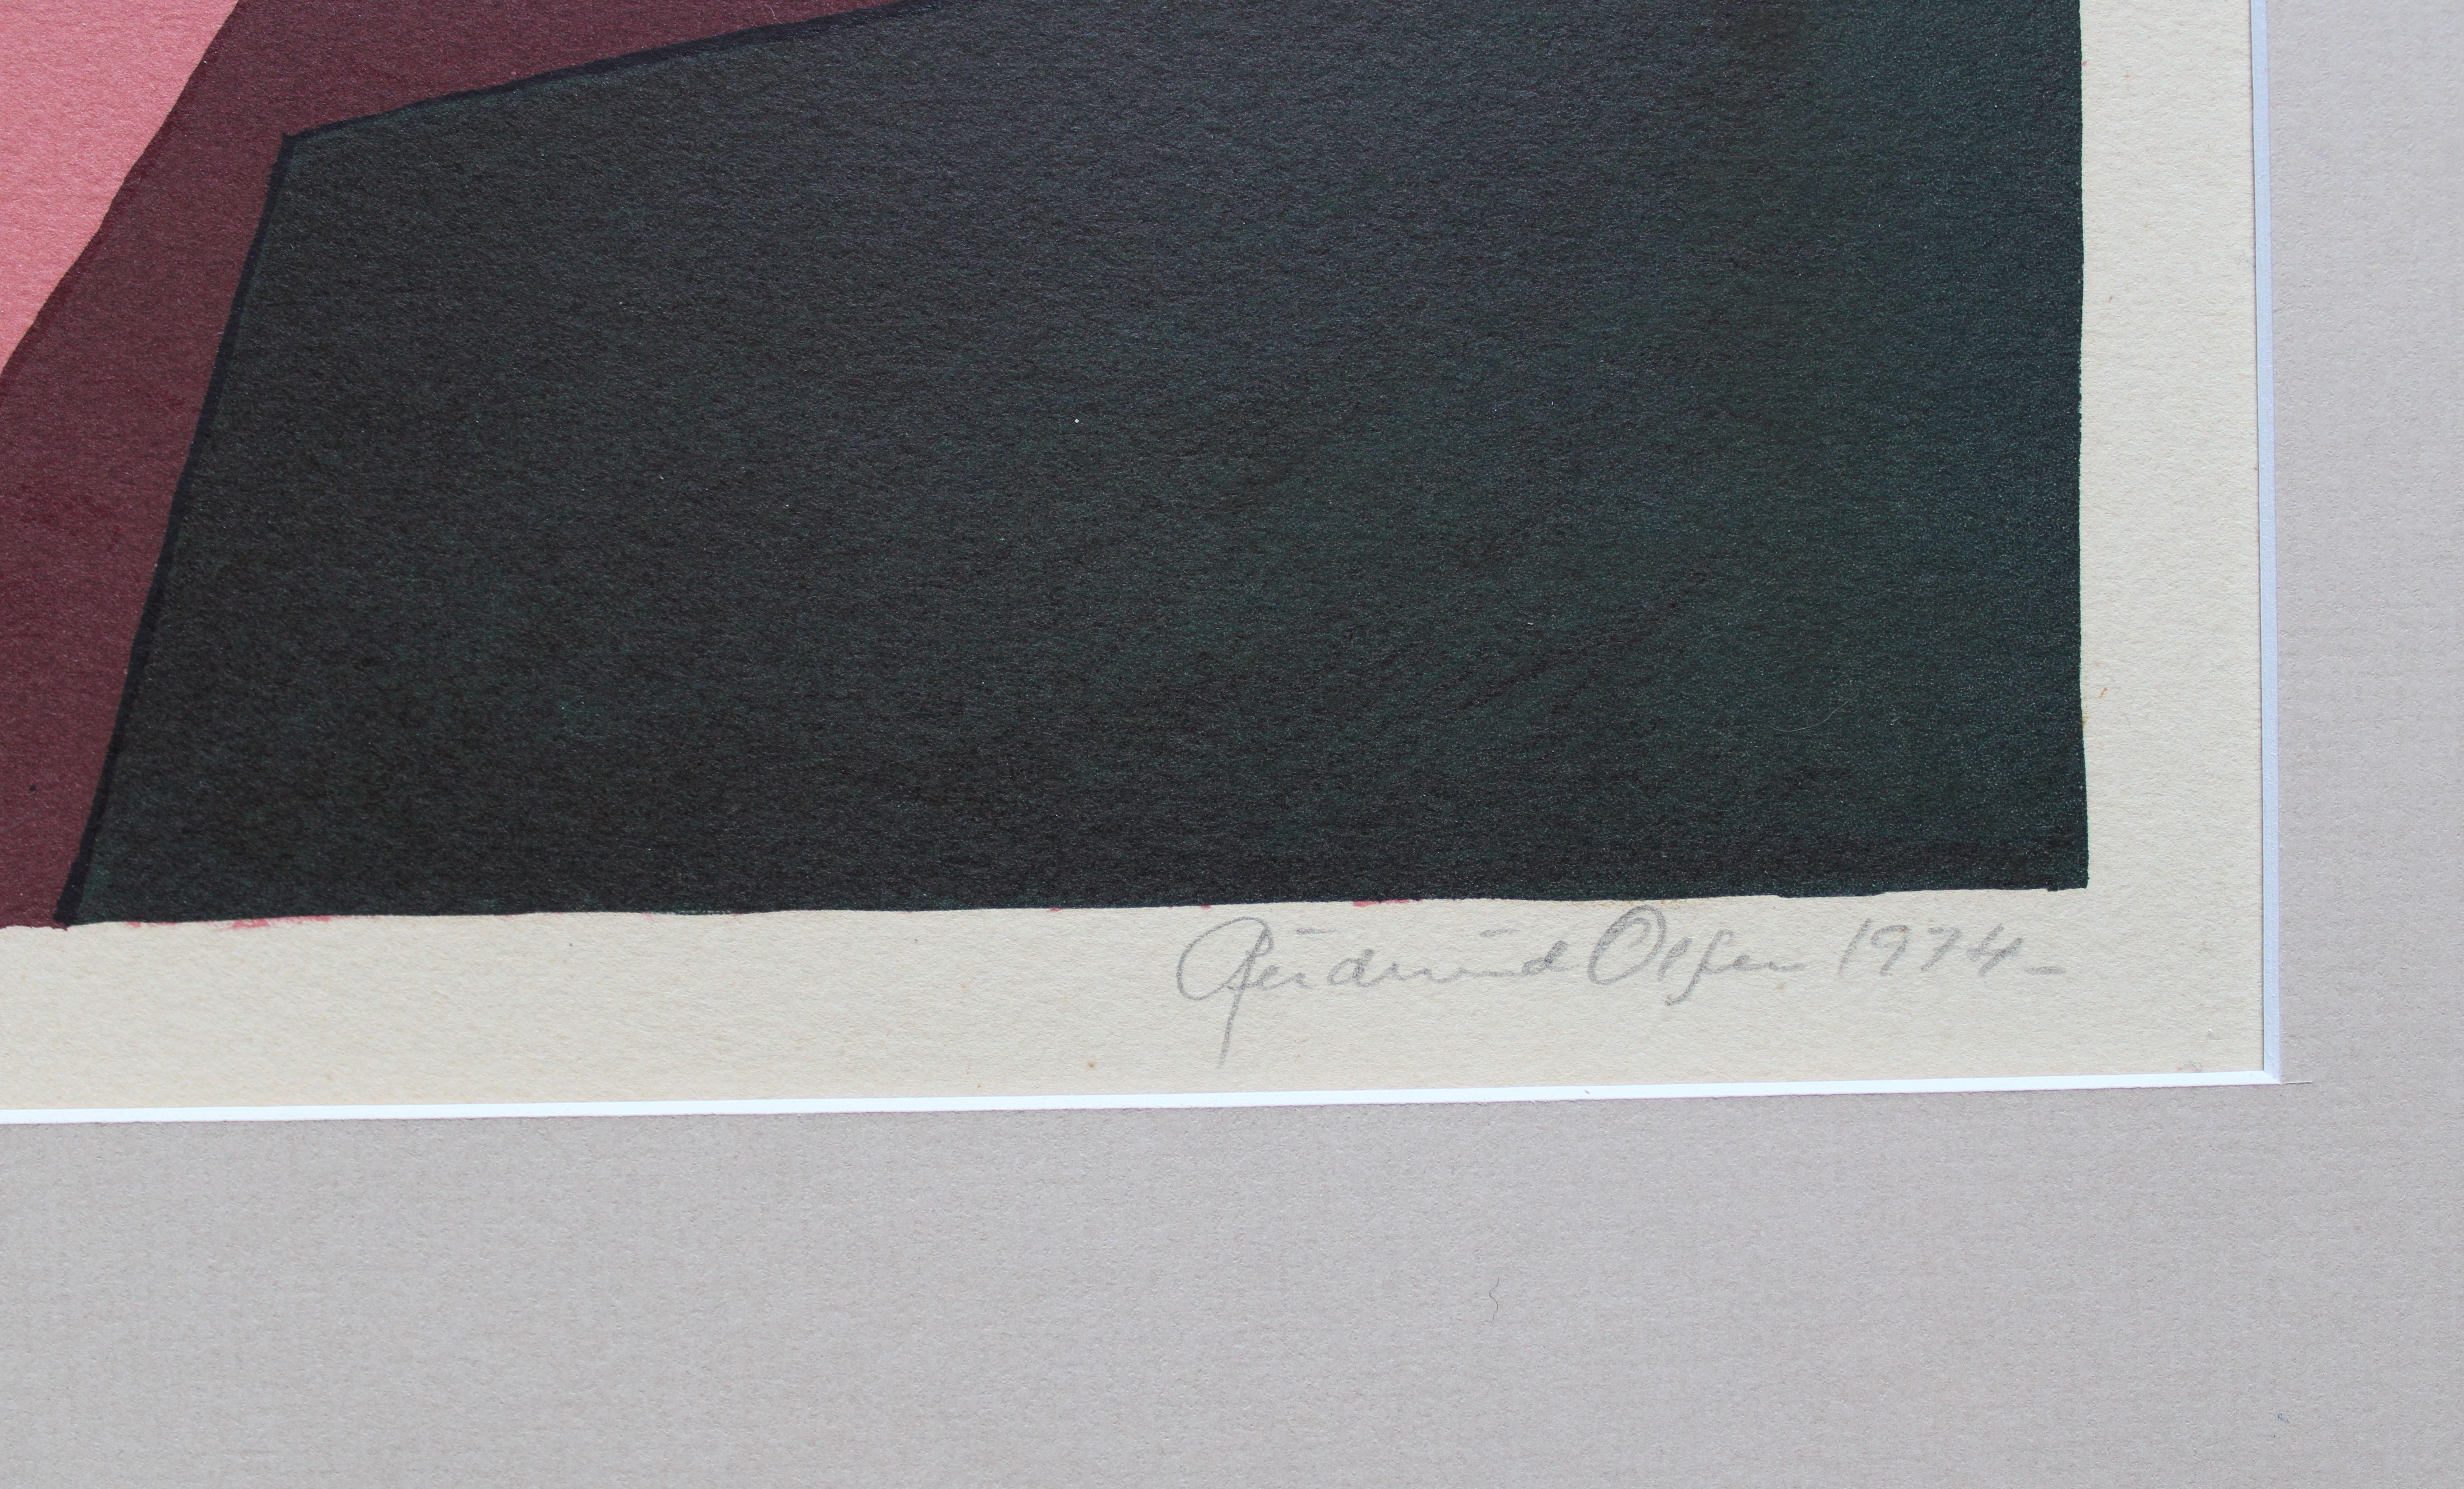  23/100, 1974. Papier, Lithographie, 43x65 cm, Papier